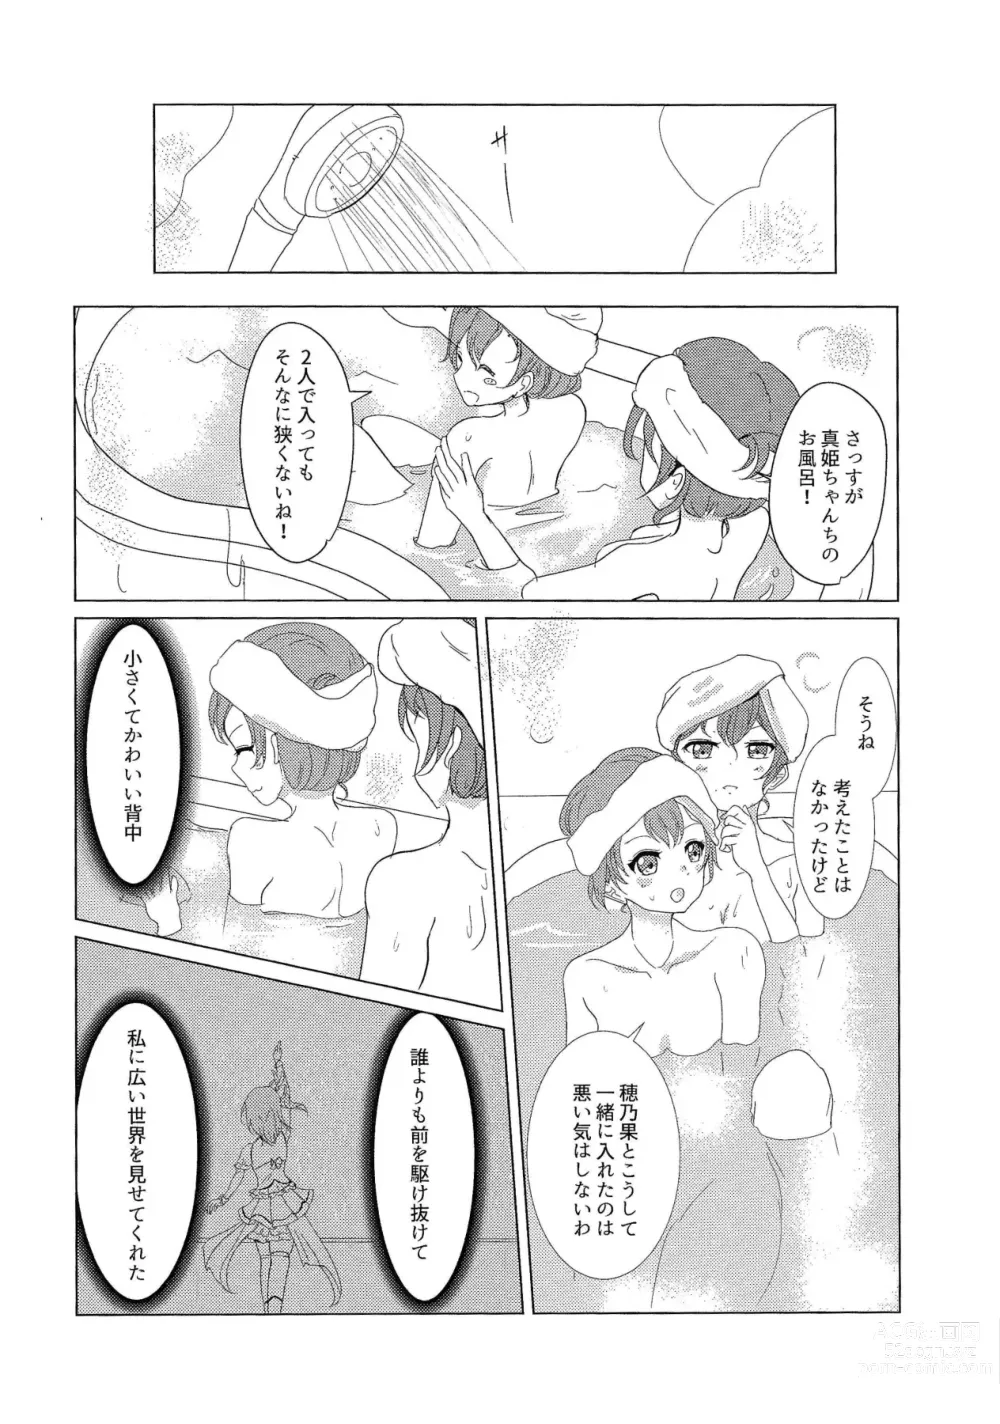 Page 11 of doujinshi ”I” o Kanadete Sono Yubi de